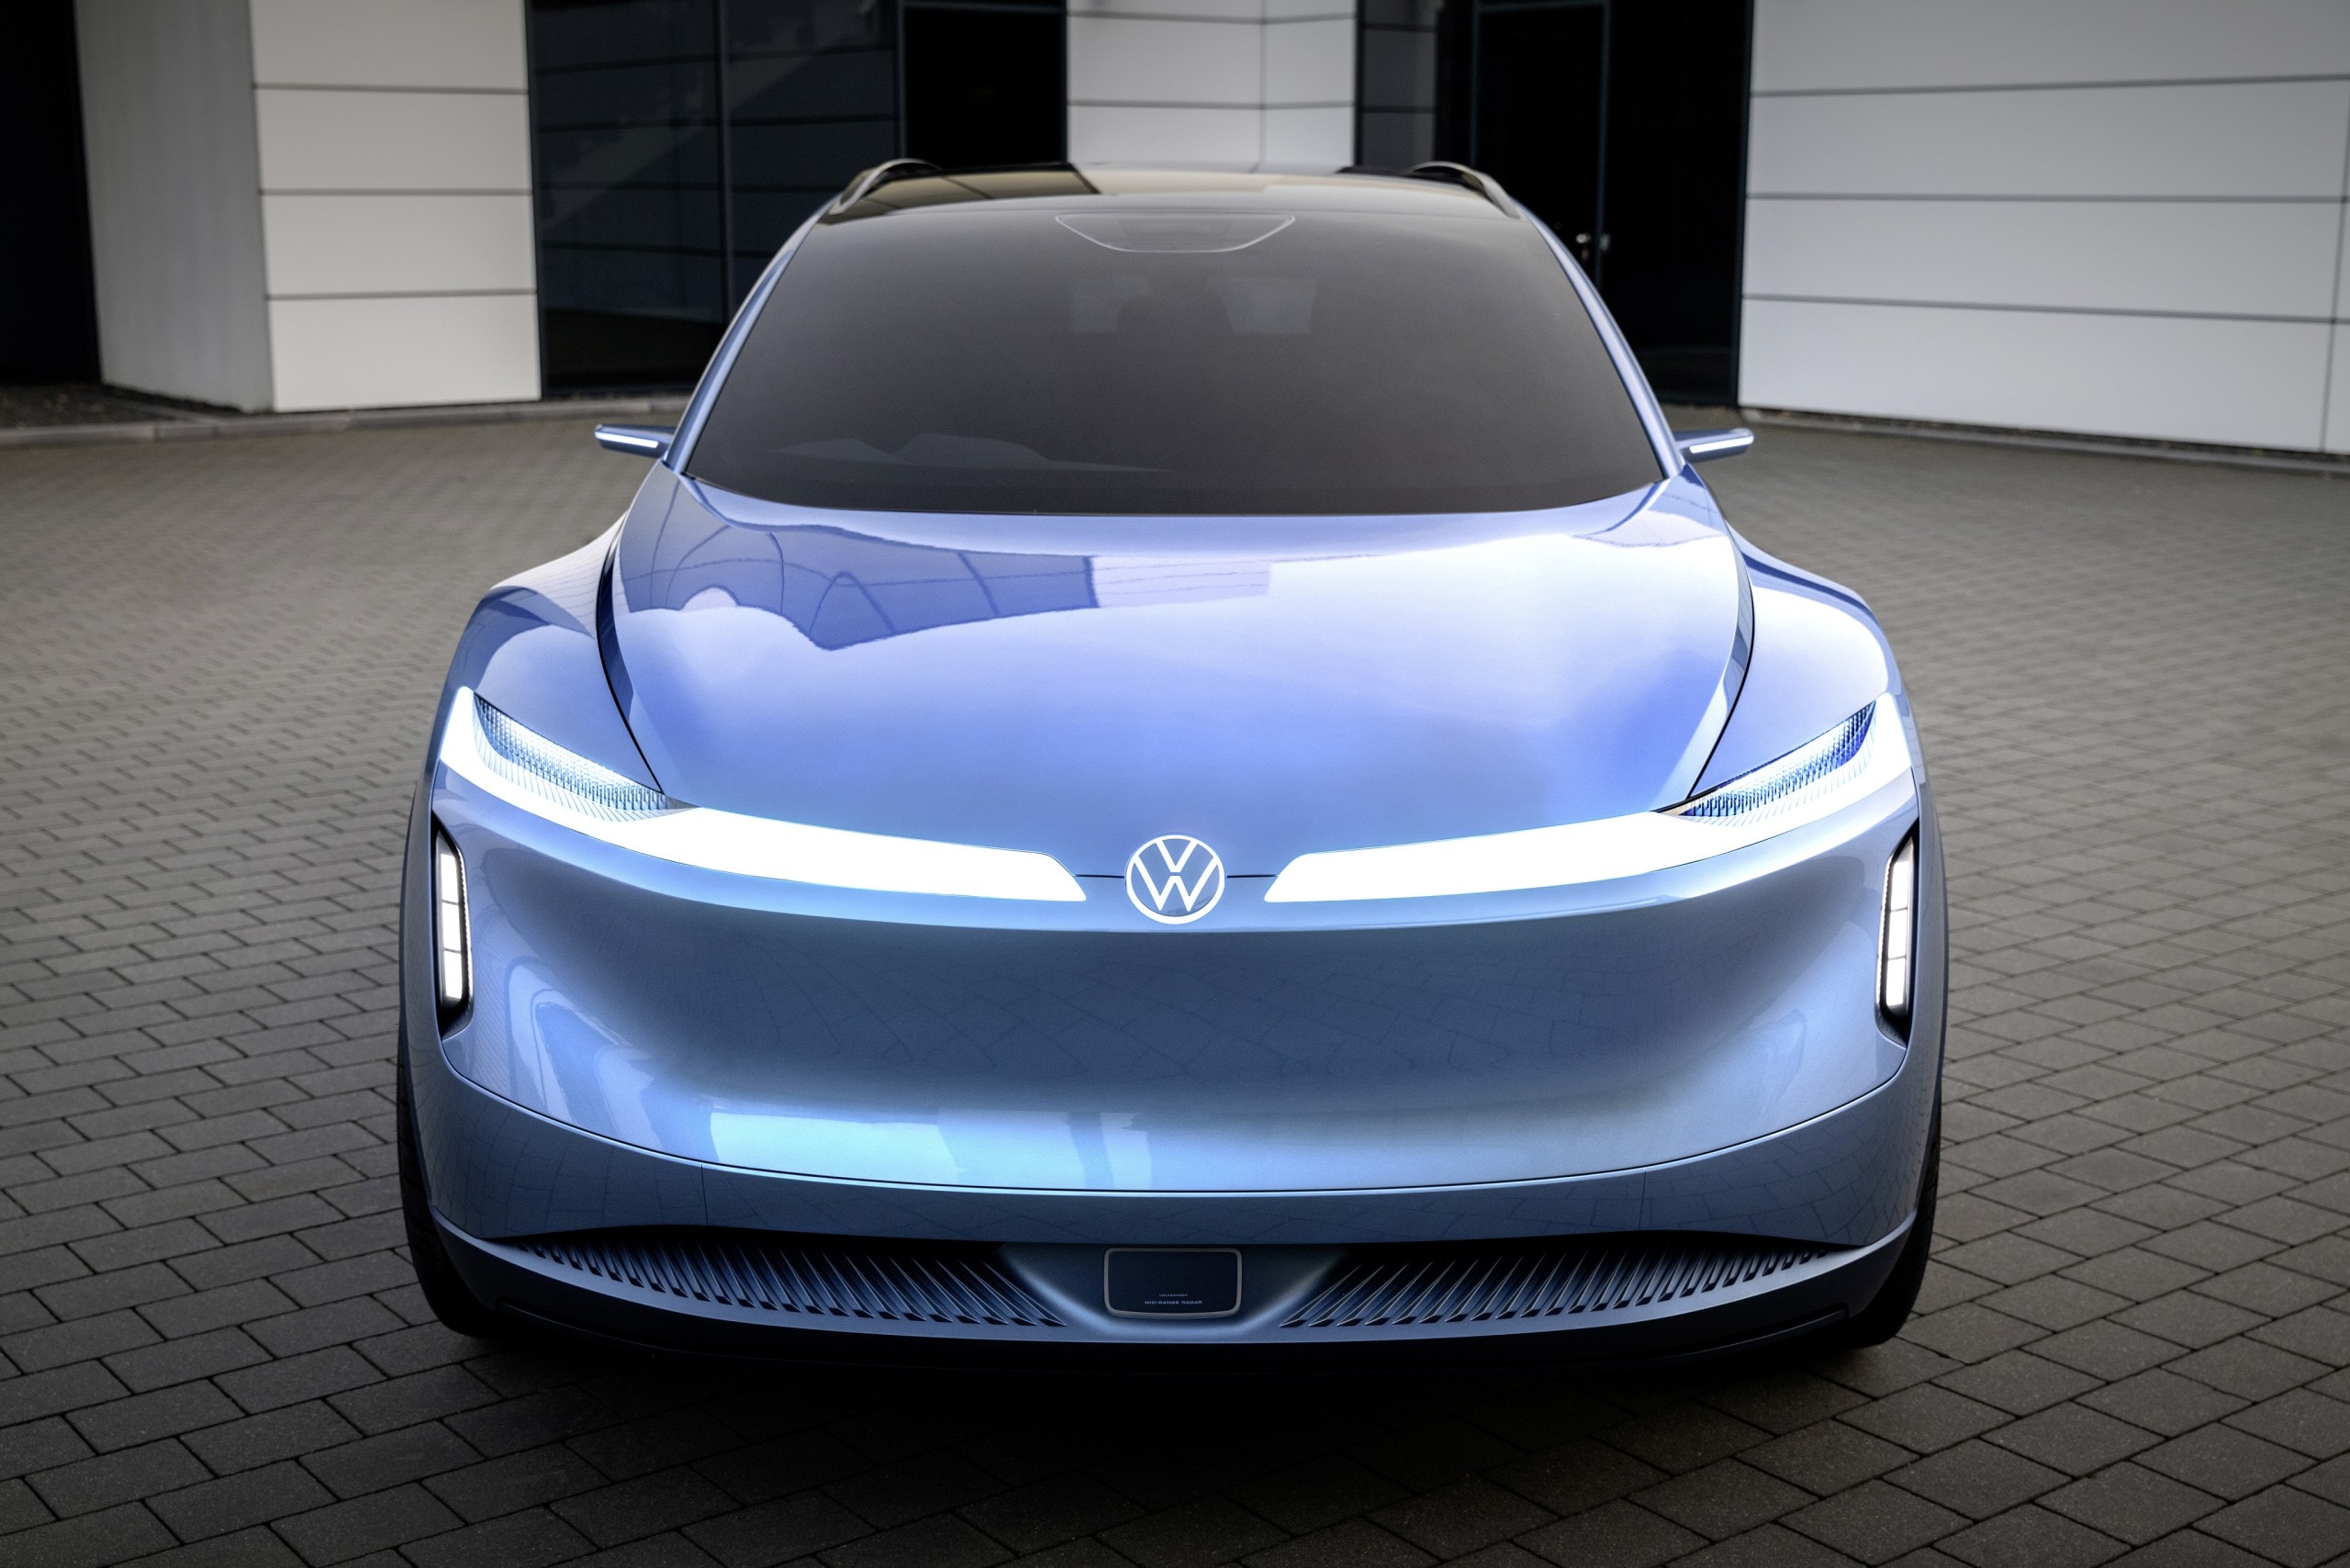 Volkswagen's ID. Code Concept